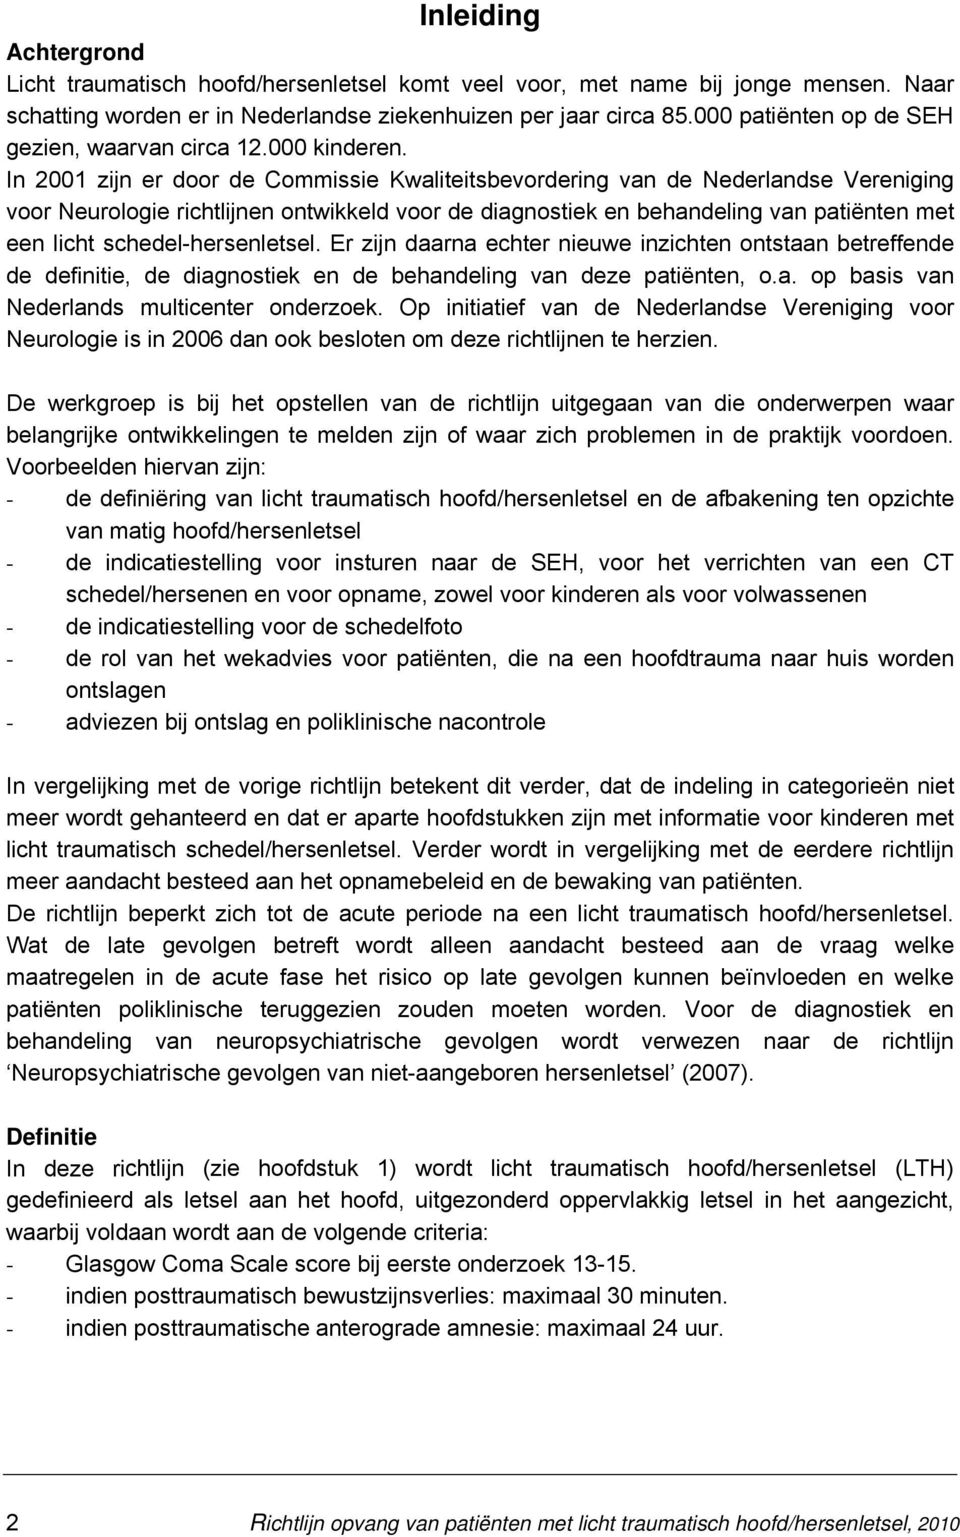 In 2001 zijn er door de Commissie Kwaliteitsbevordering van de Nederlandse Vereniging voor Neurologie richtlijnen ontwikkeld voor de diagnostiek en behandeling van patiënten met een licht